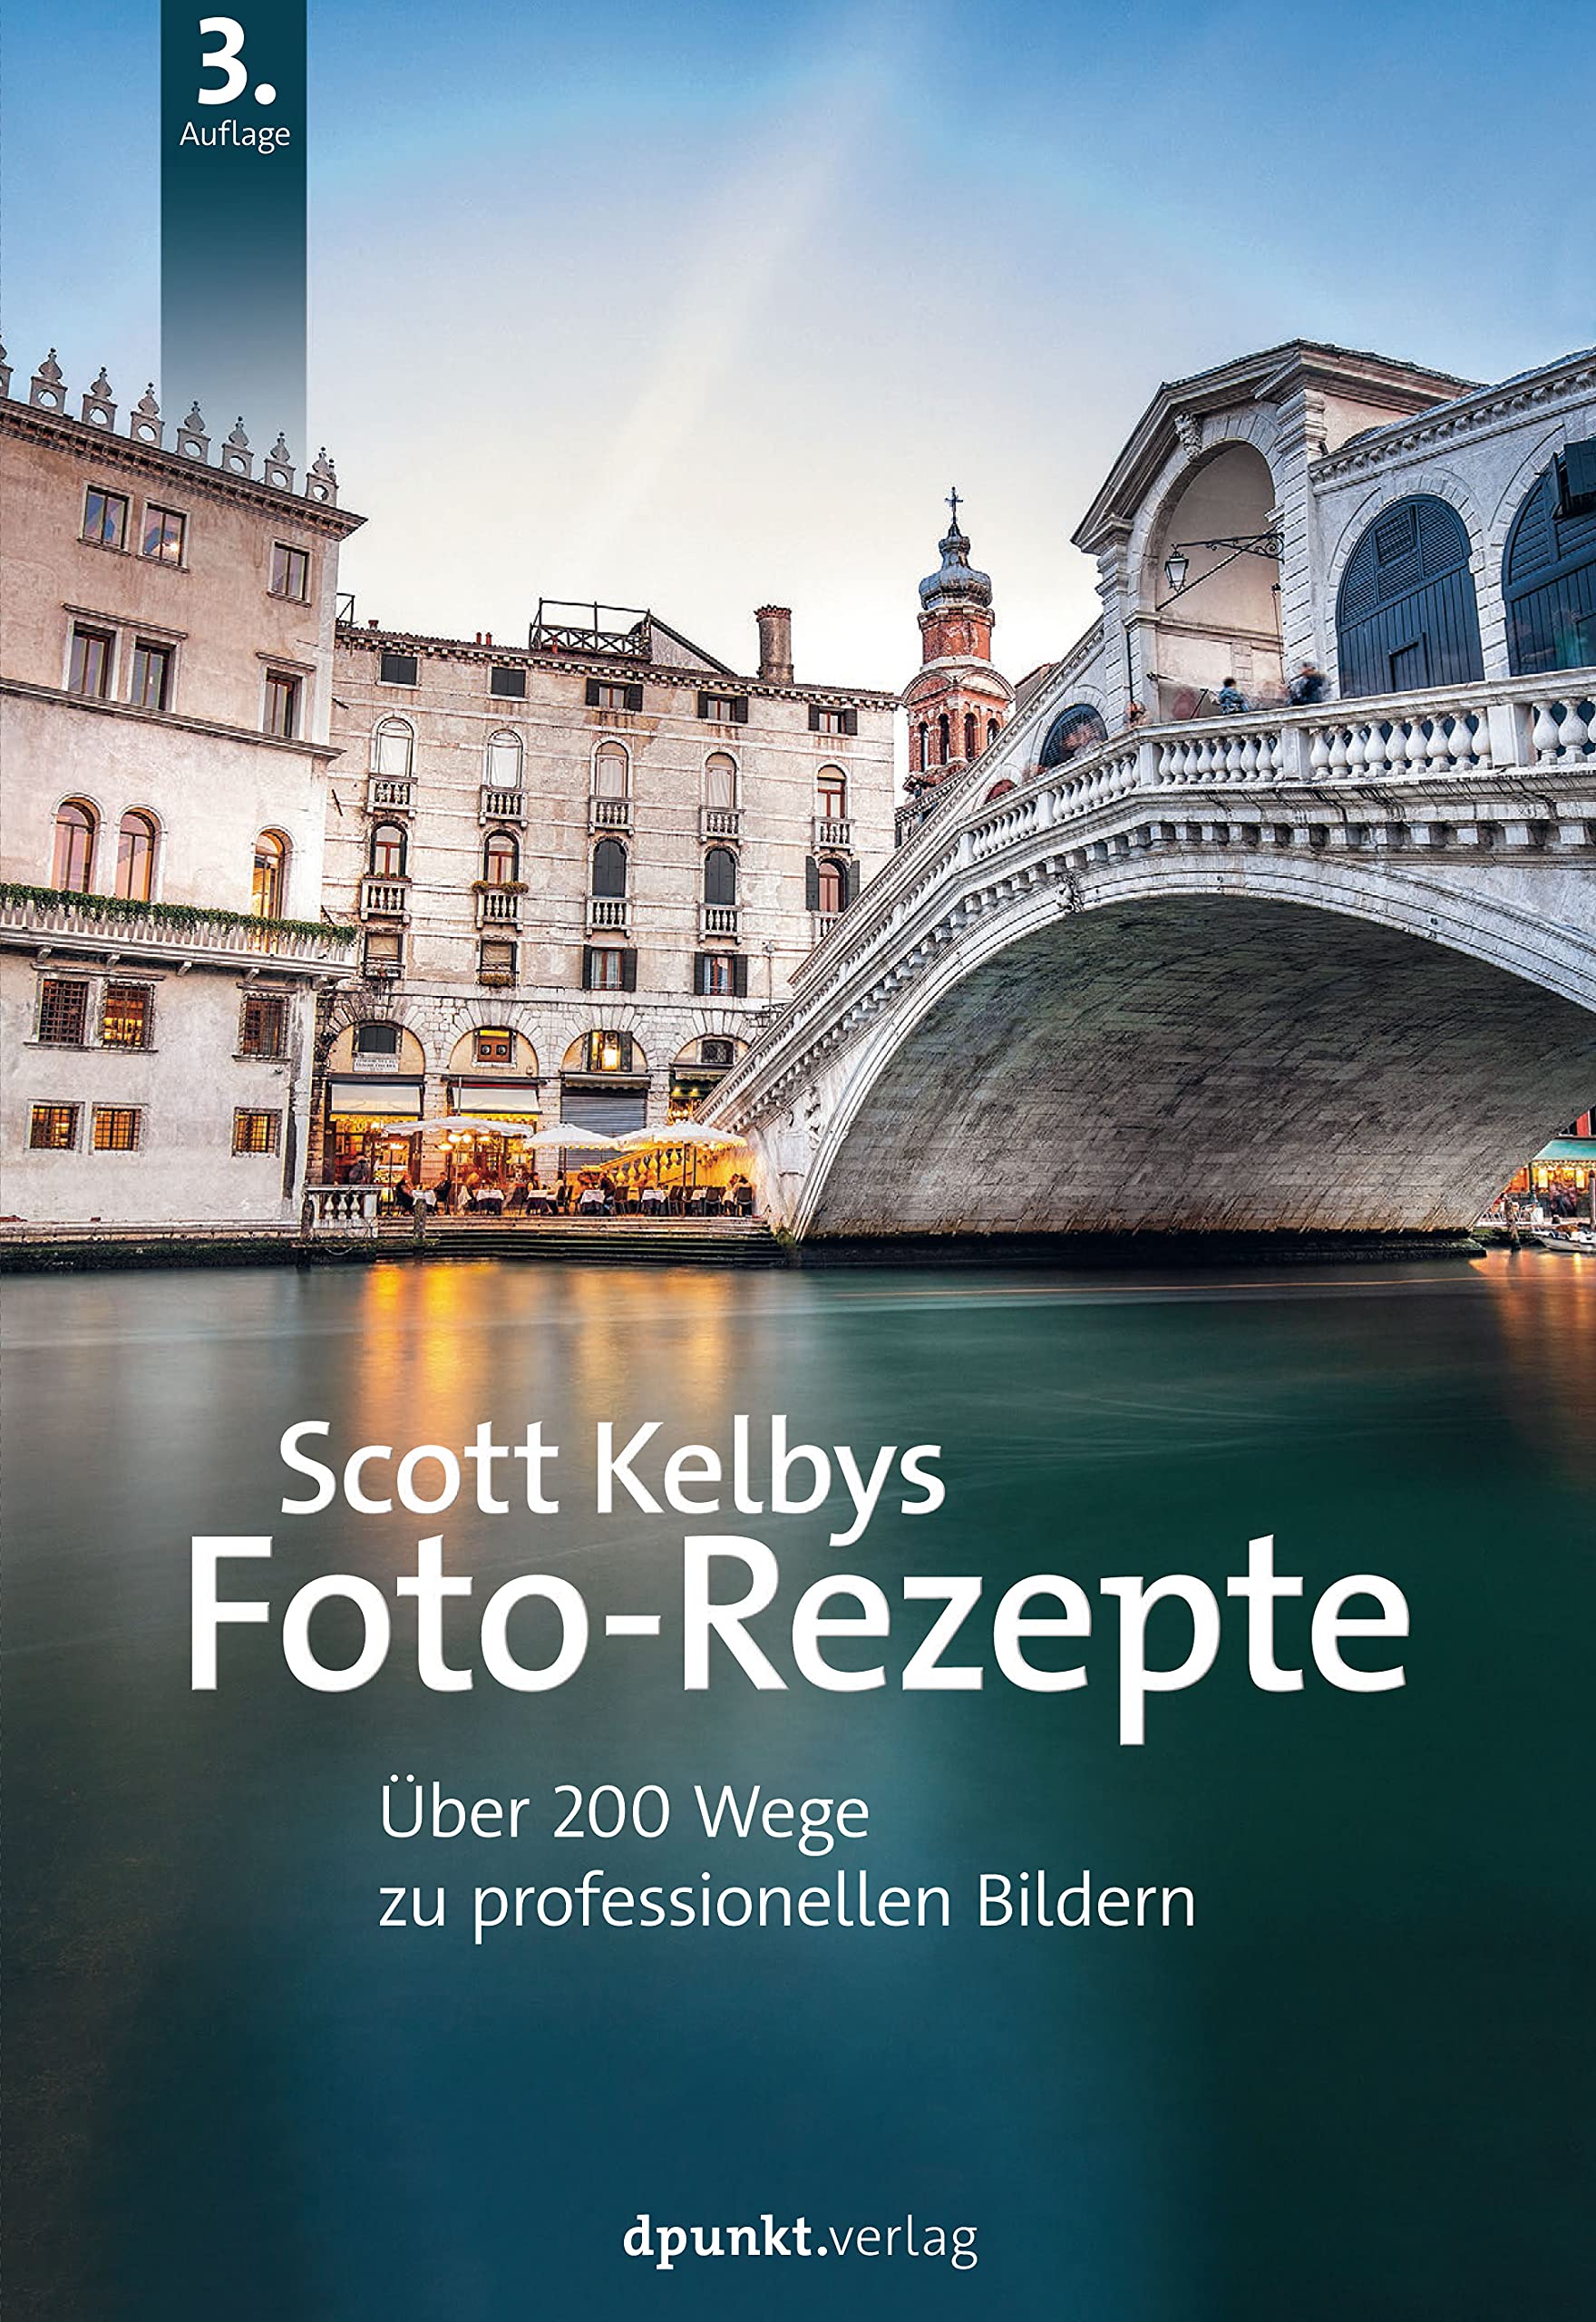 Scott Kelbys Foto-Rezepte: Über 200 Wege zu professionellen Bildern